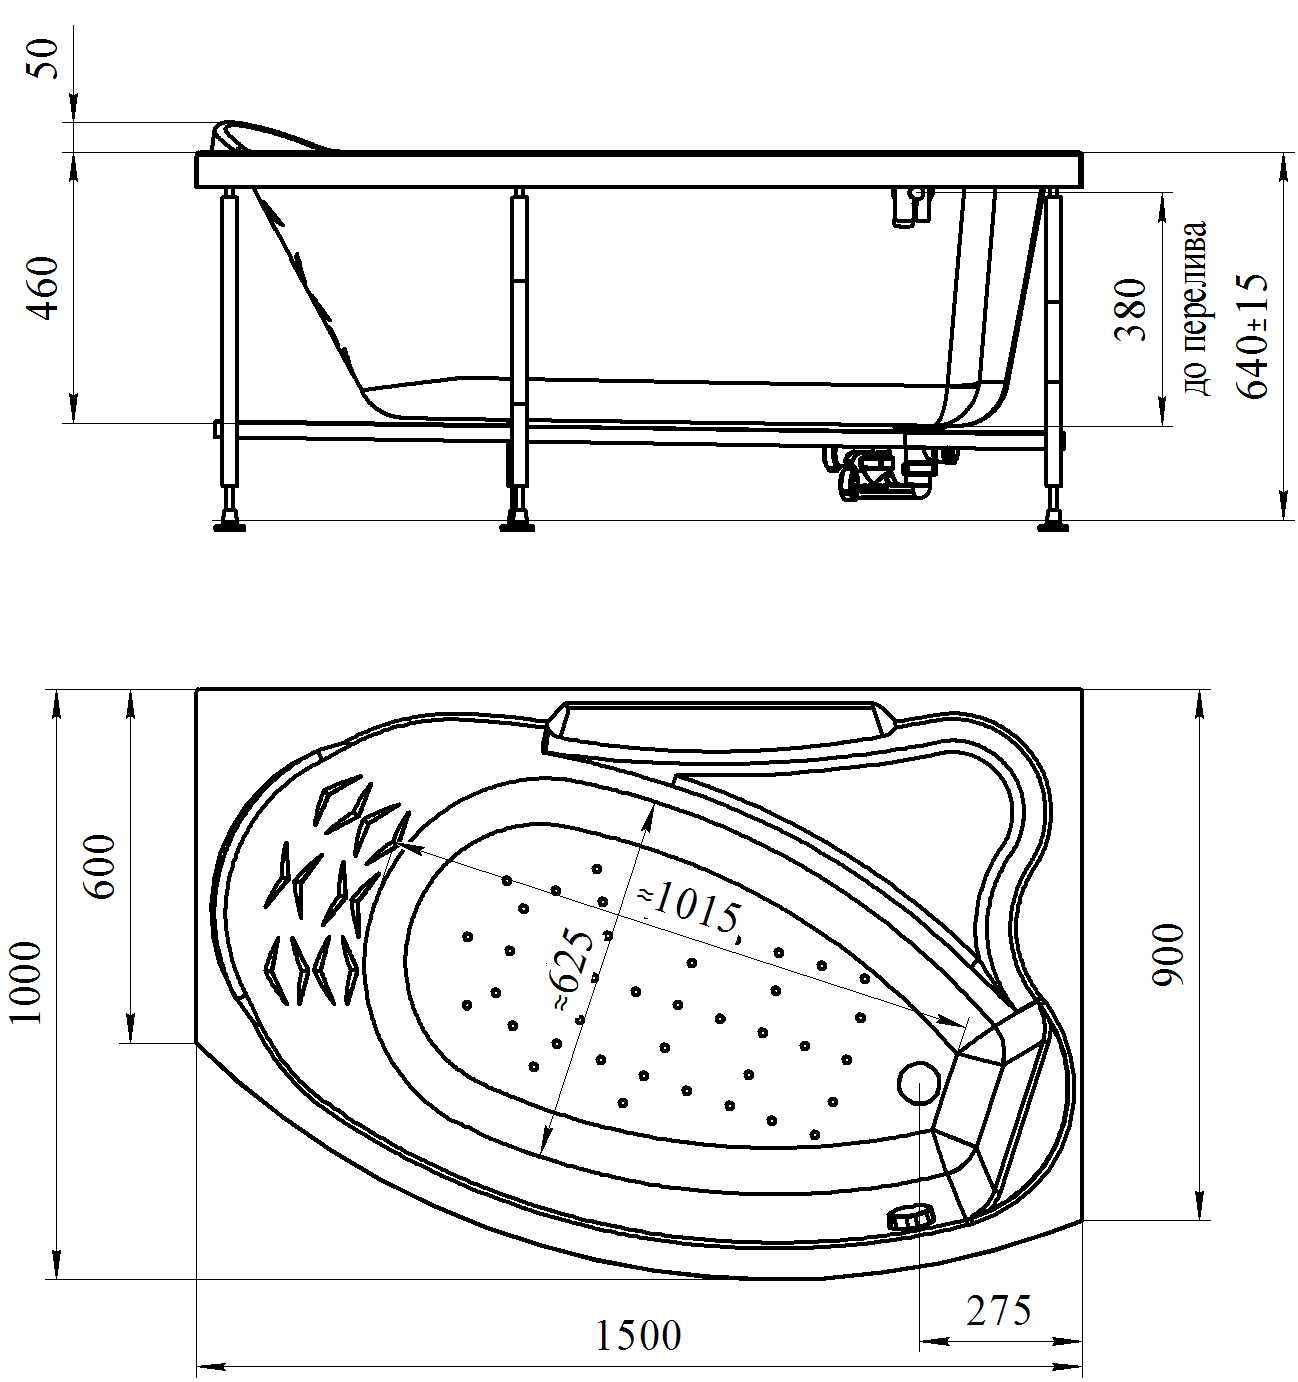 Размеры ванны: типовые, стандарты габаритов, угловые ванны, чугунные, акриловые (+ фото)